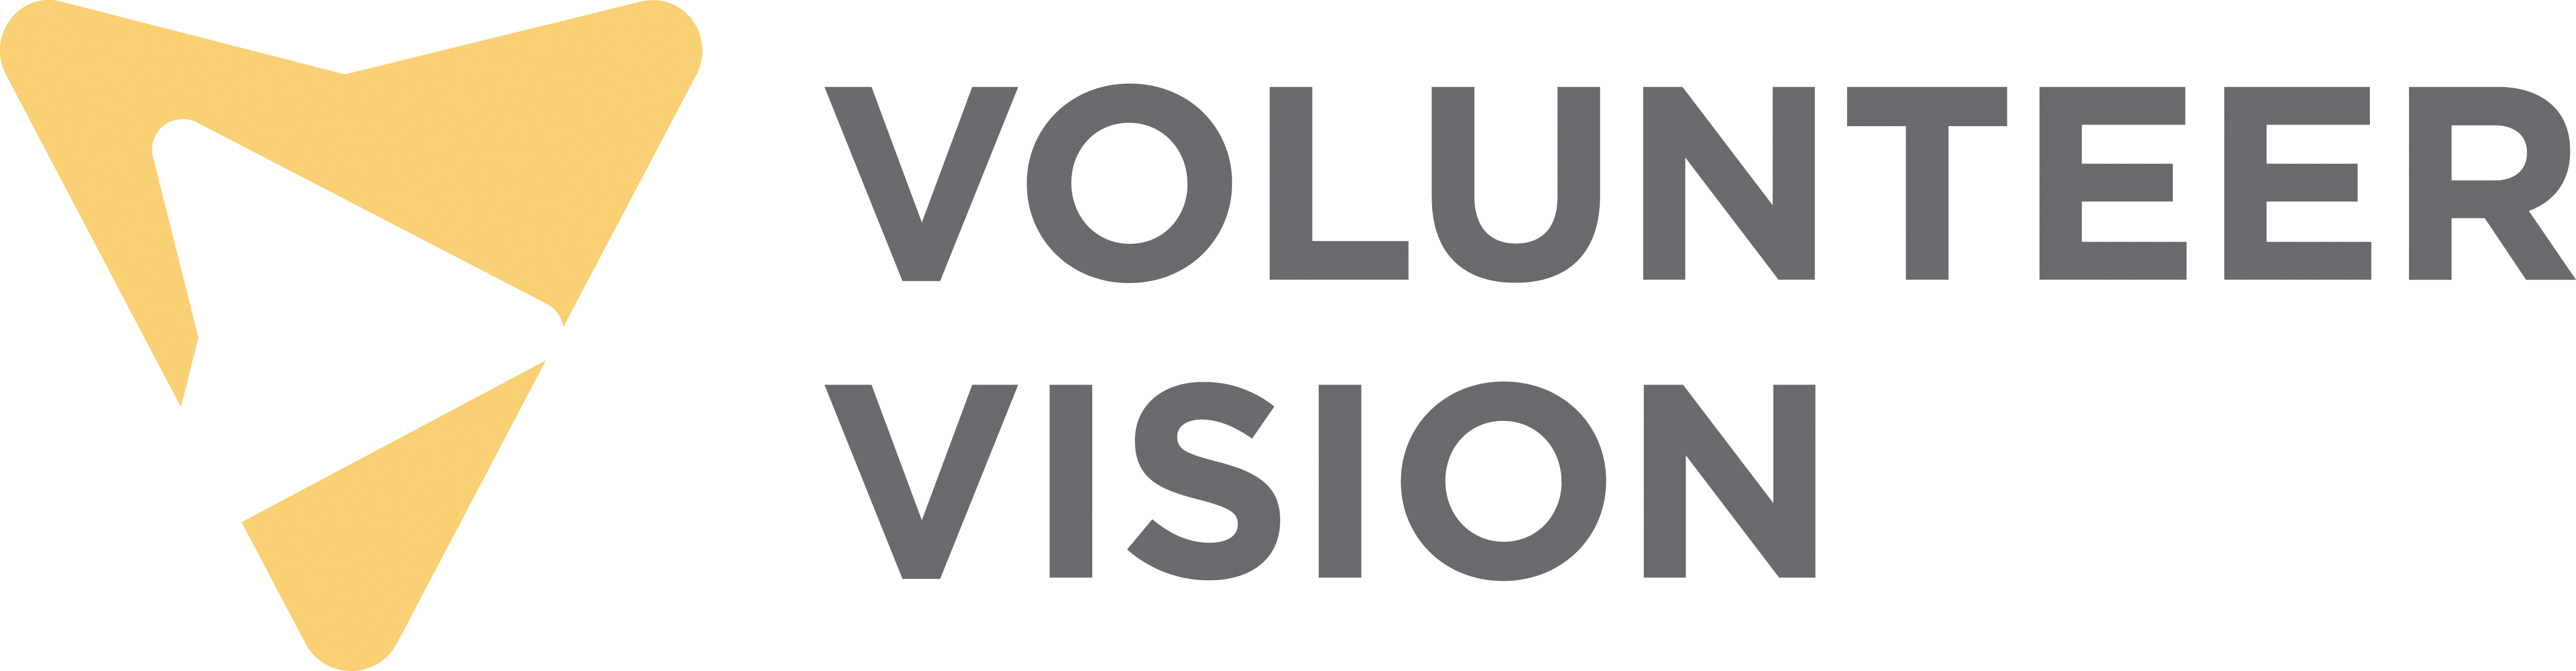 volunteer vision 